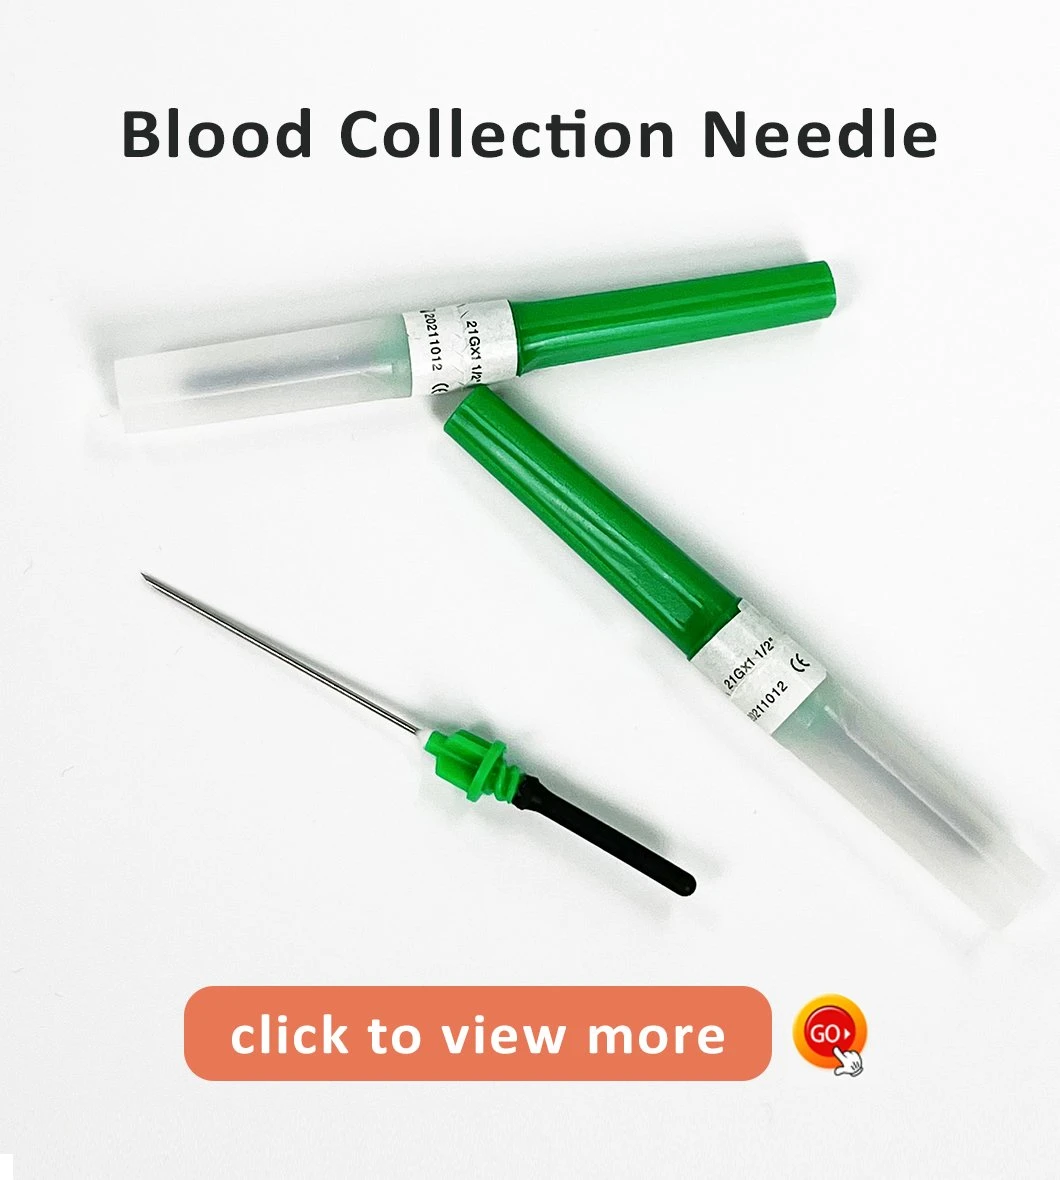 Ativador de coágulo aditivo de tubo de coleta de sangue descartável médico preço de fábrica com CE